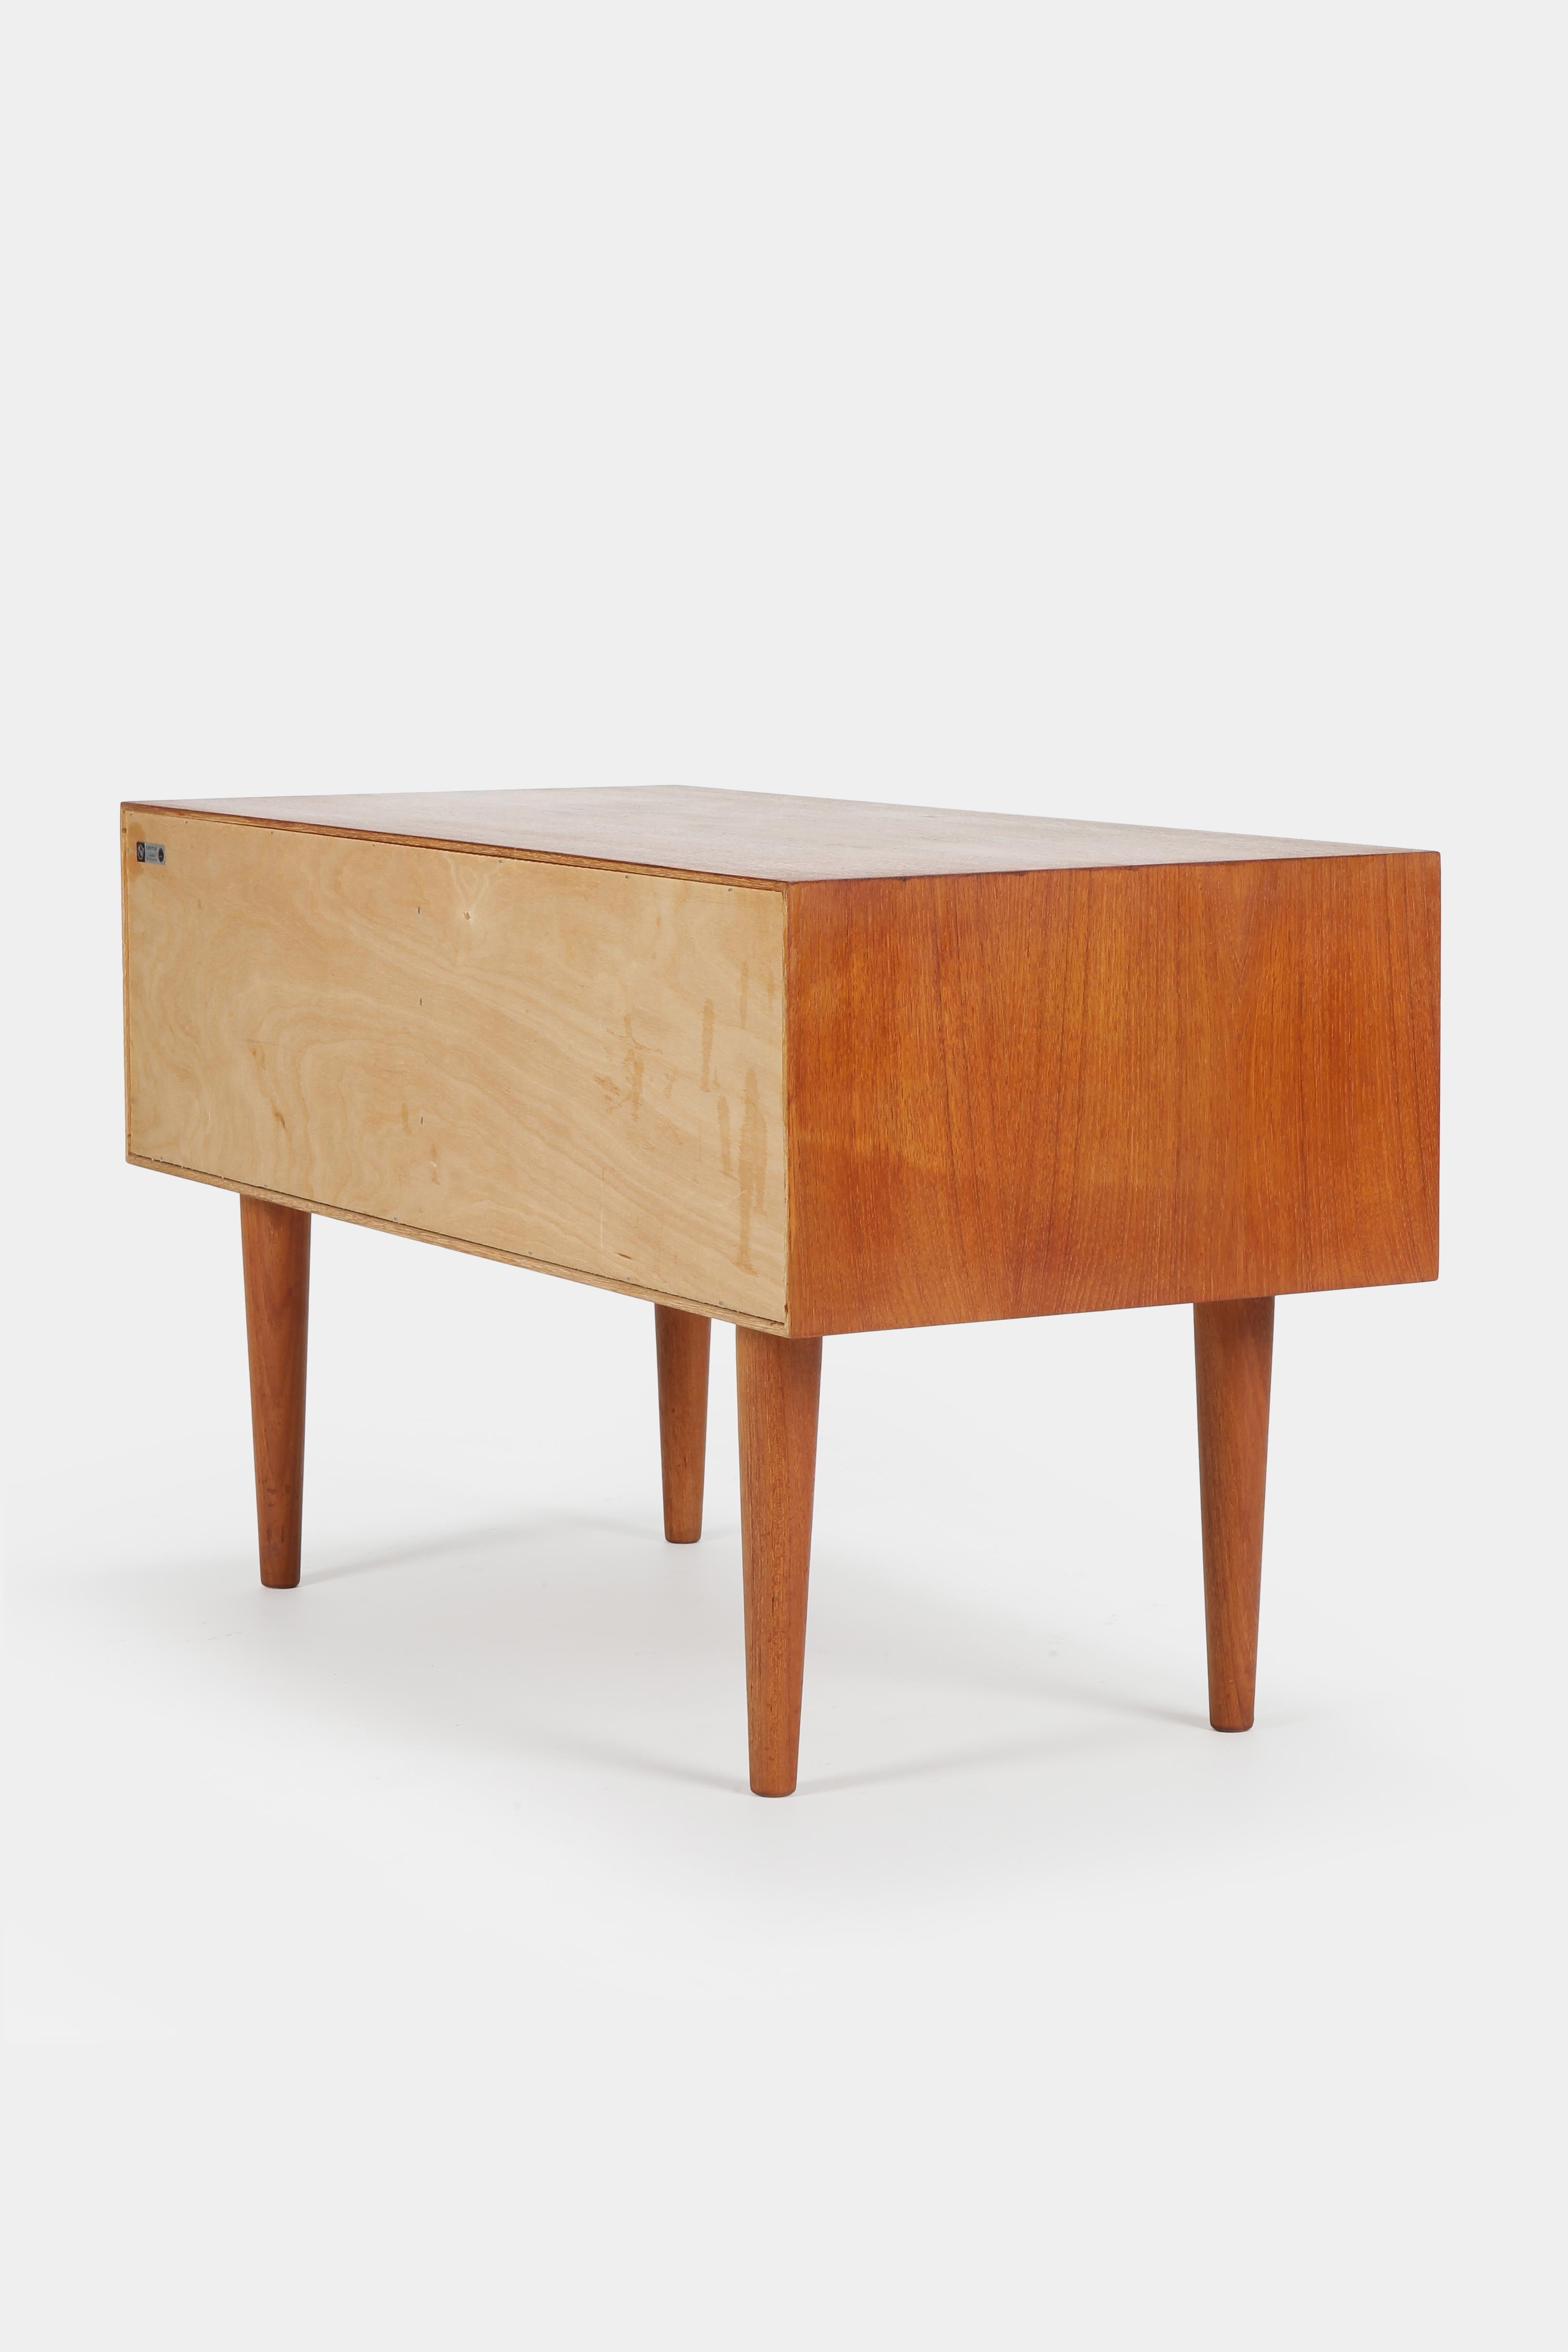 Kai Kristiansen Small Teak Dresser Midcentury modern Danish Design, 1960s For Sale 1